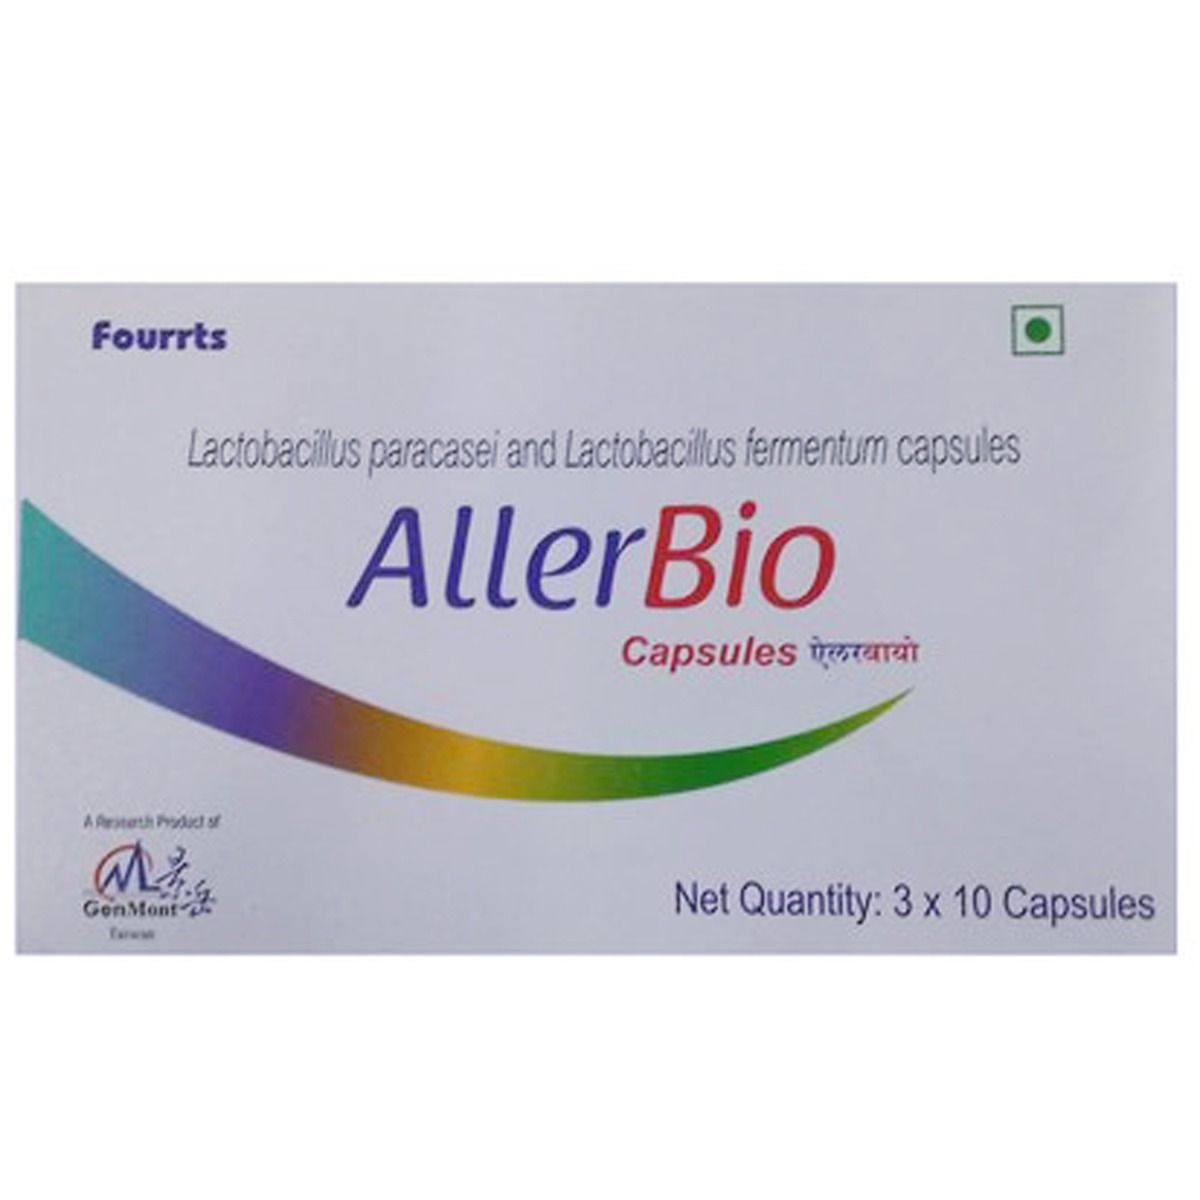 AllerBio Capsule 10's, Pack of 10 CAPSULES